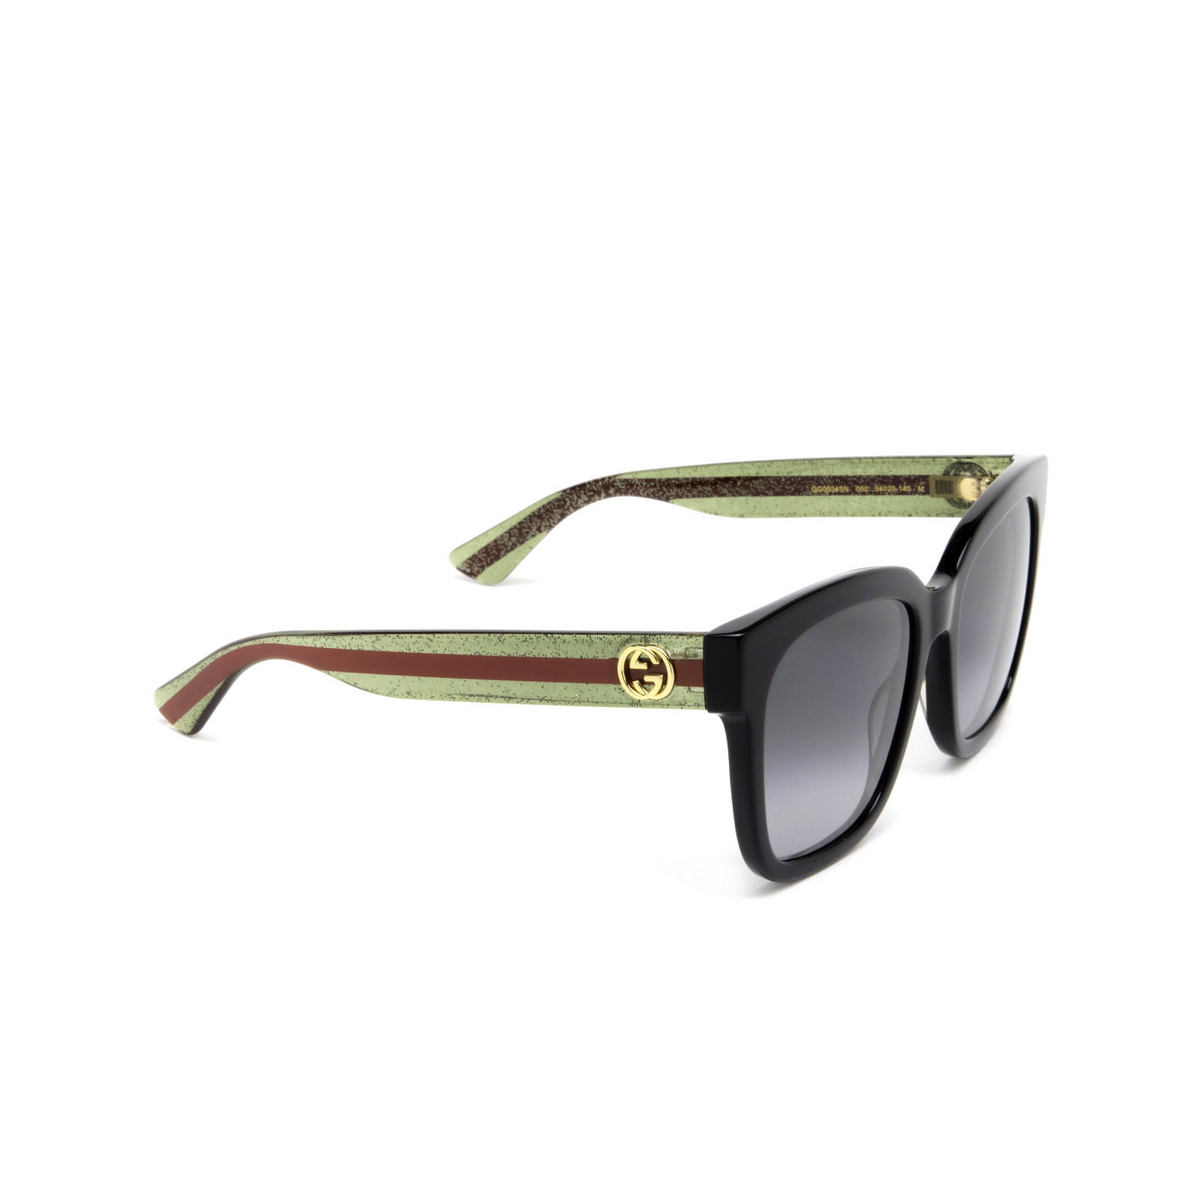 Gucci® Square Sunglasses: GG0034SN color Black 002 - three-quarters view.